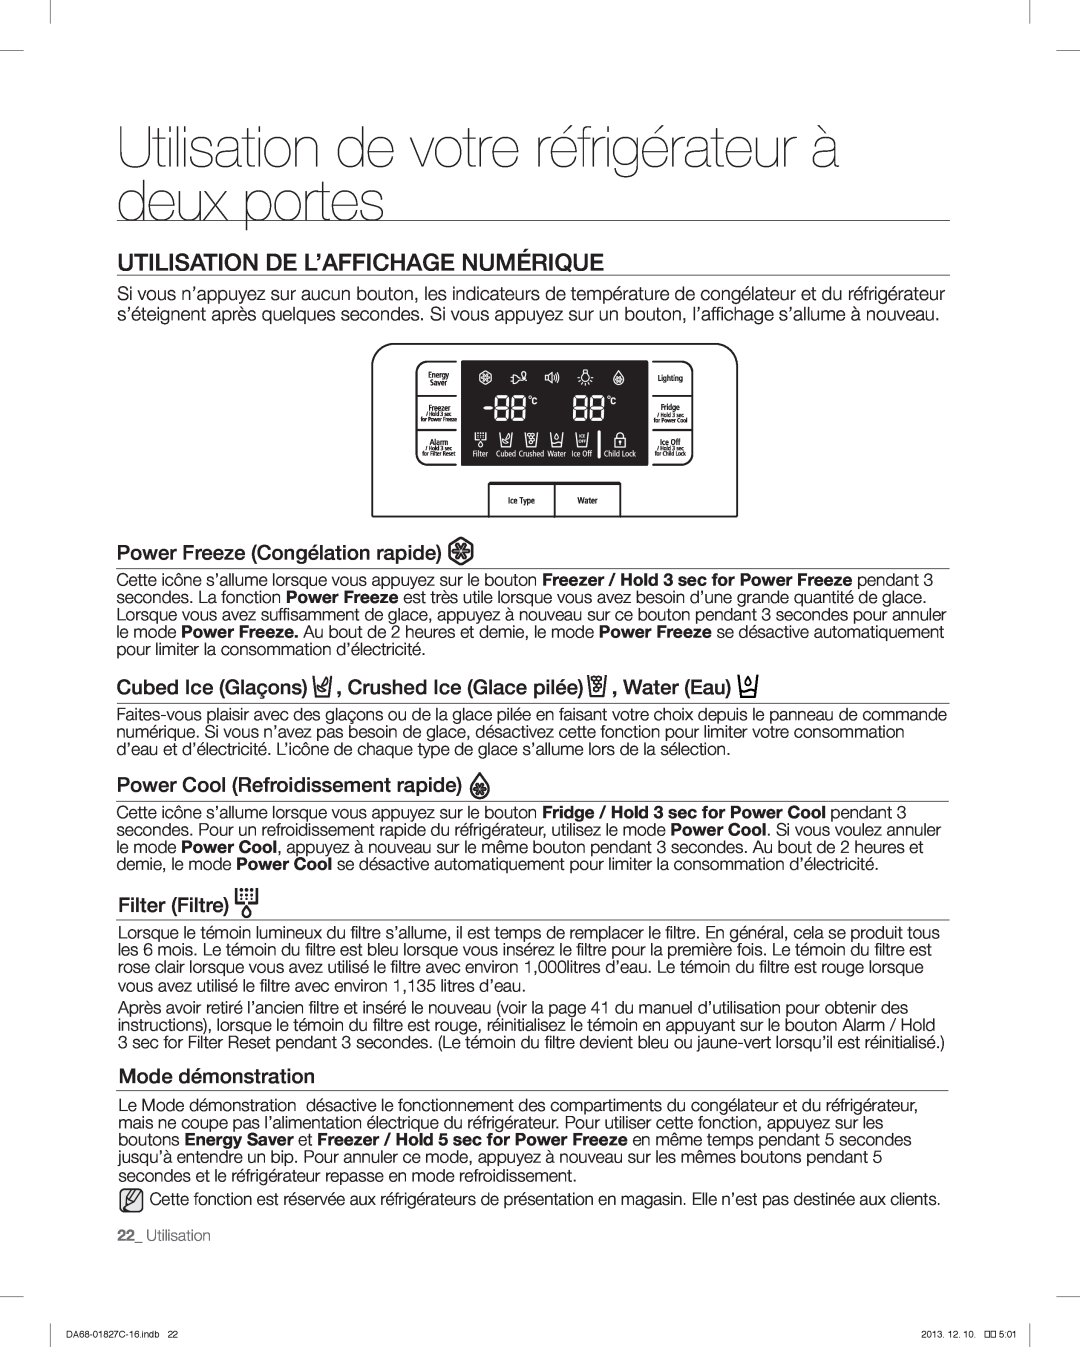 Samsung RFG237AARS Utilisation de votre réfrigérateur à deux portes, Utilisation De L’Affichage Numérique, Filter Filtre 